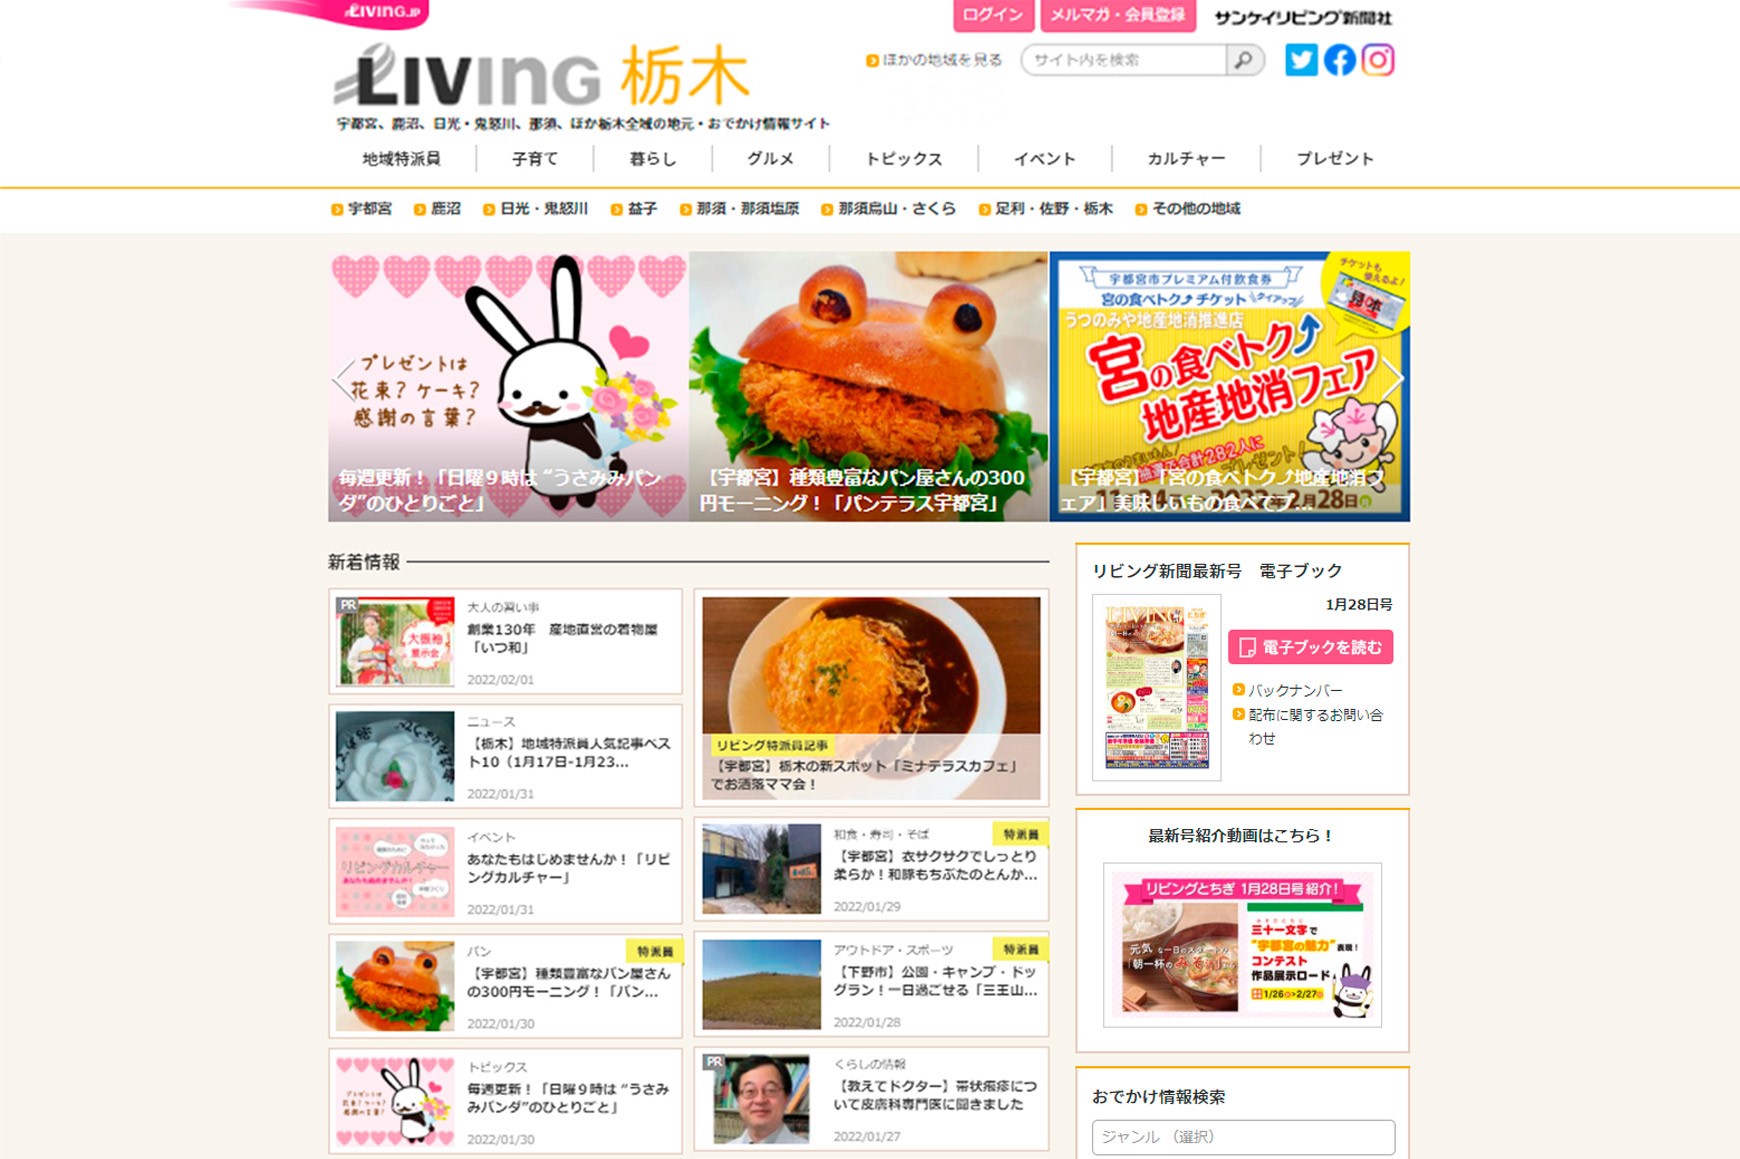 livingtochigiweb_top2